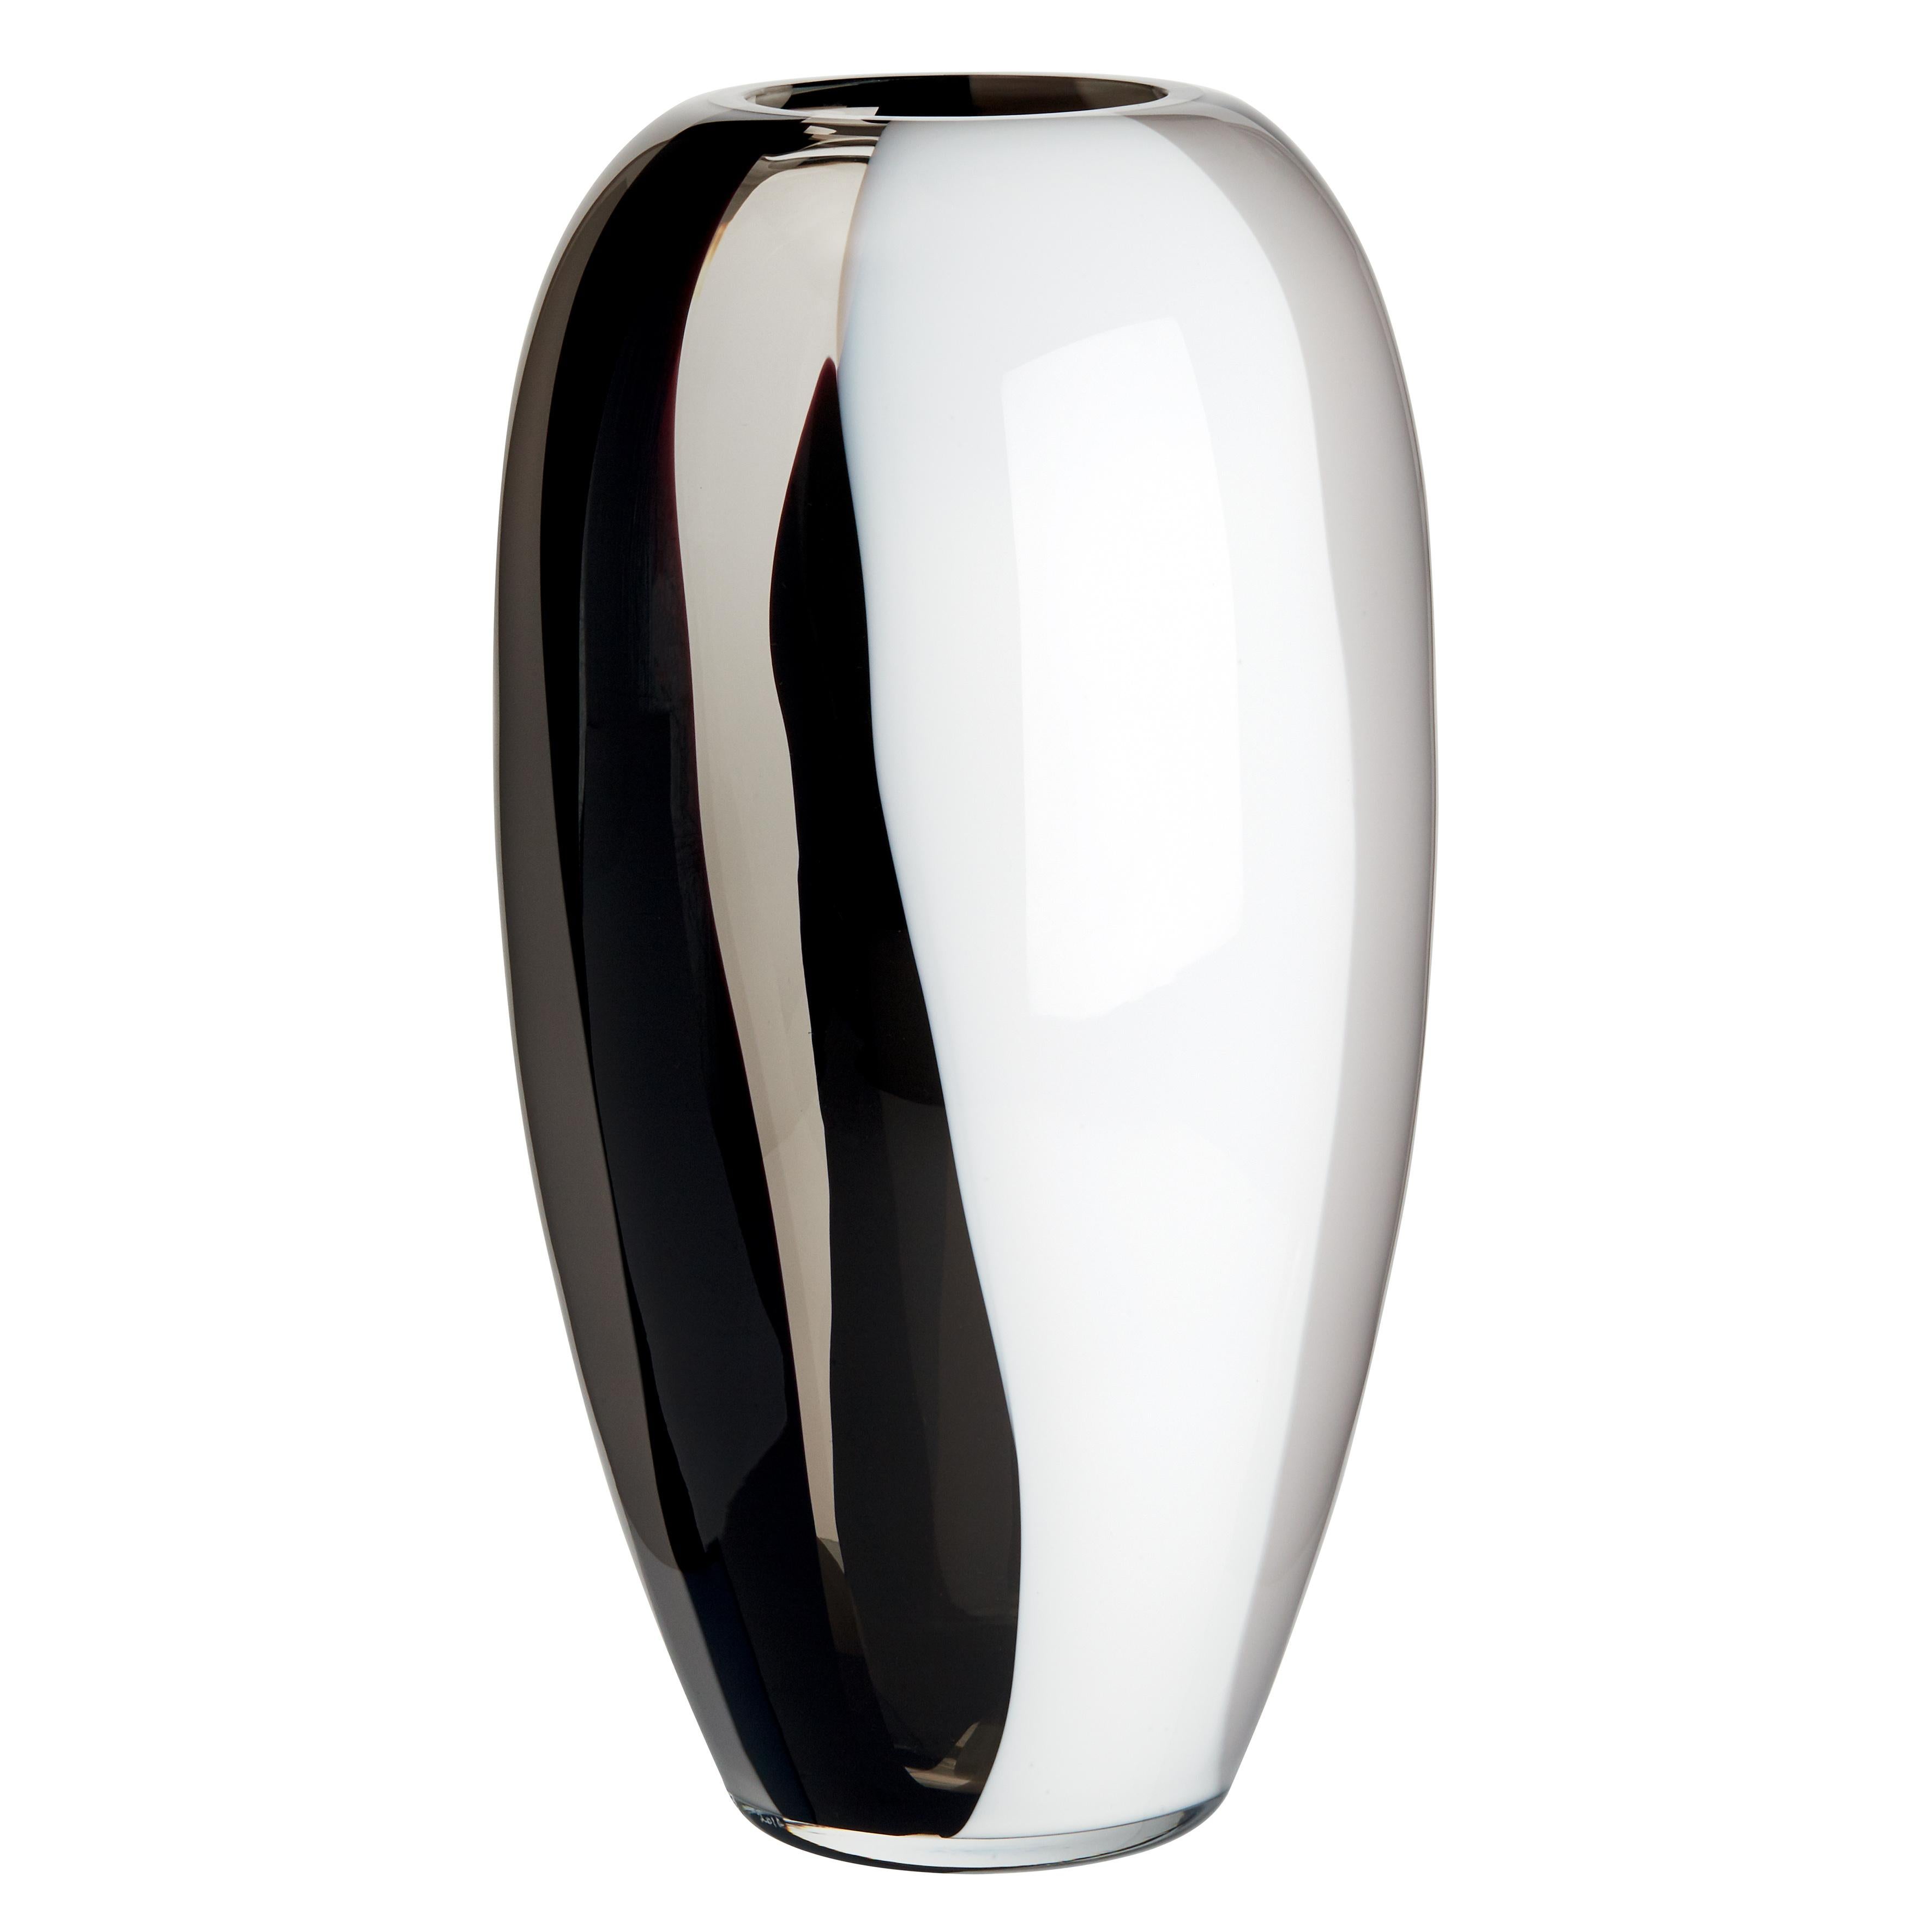 Die Eleganz der Einfachheit. Ogiva ist eine achsensymmetrische, schlanke Vase, die aus jedem Blickwinkel ins Auge fällt. Die Version, die die Transparenz des Stahlkristalls mit den undurchsichtigen Farben Milchweiß, Grau und Schwarz verbindet, ist